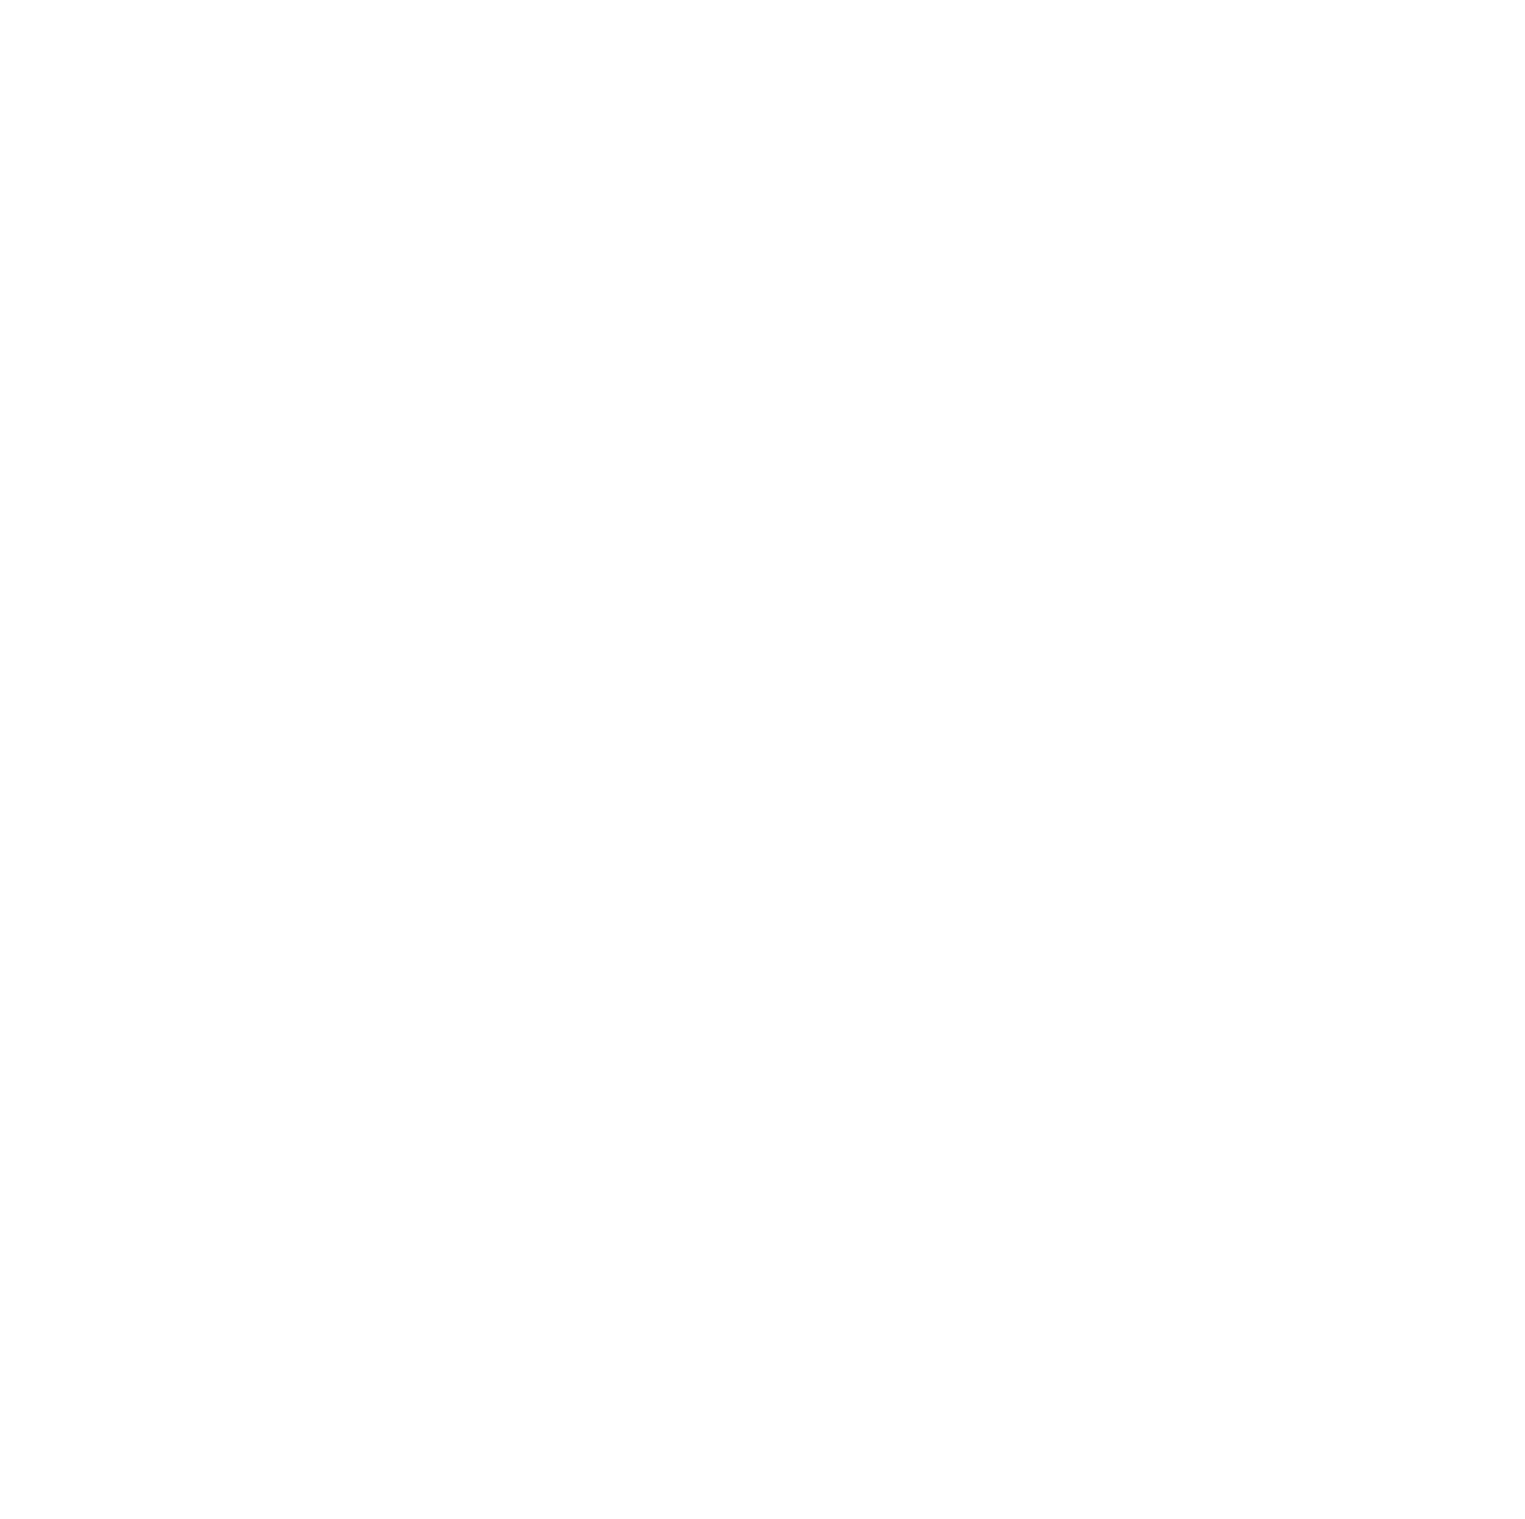 AMTD Digital logo for dark backgrounds (transparent PNG)